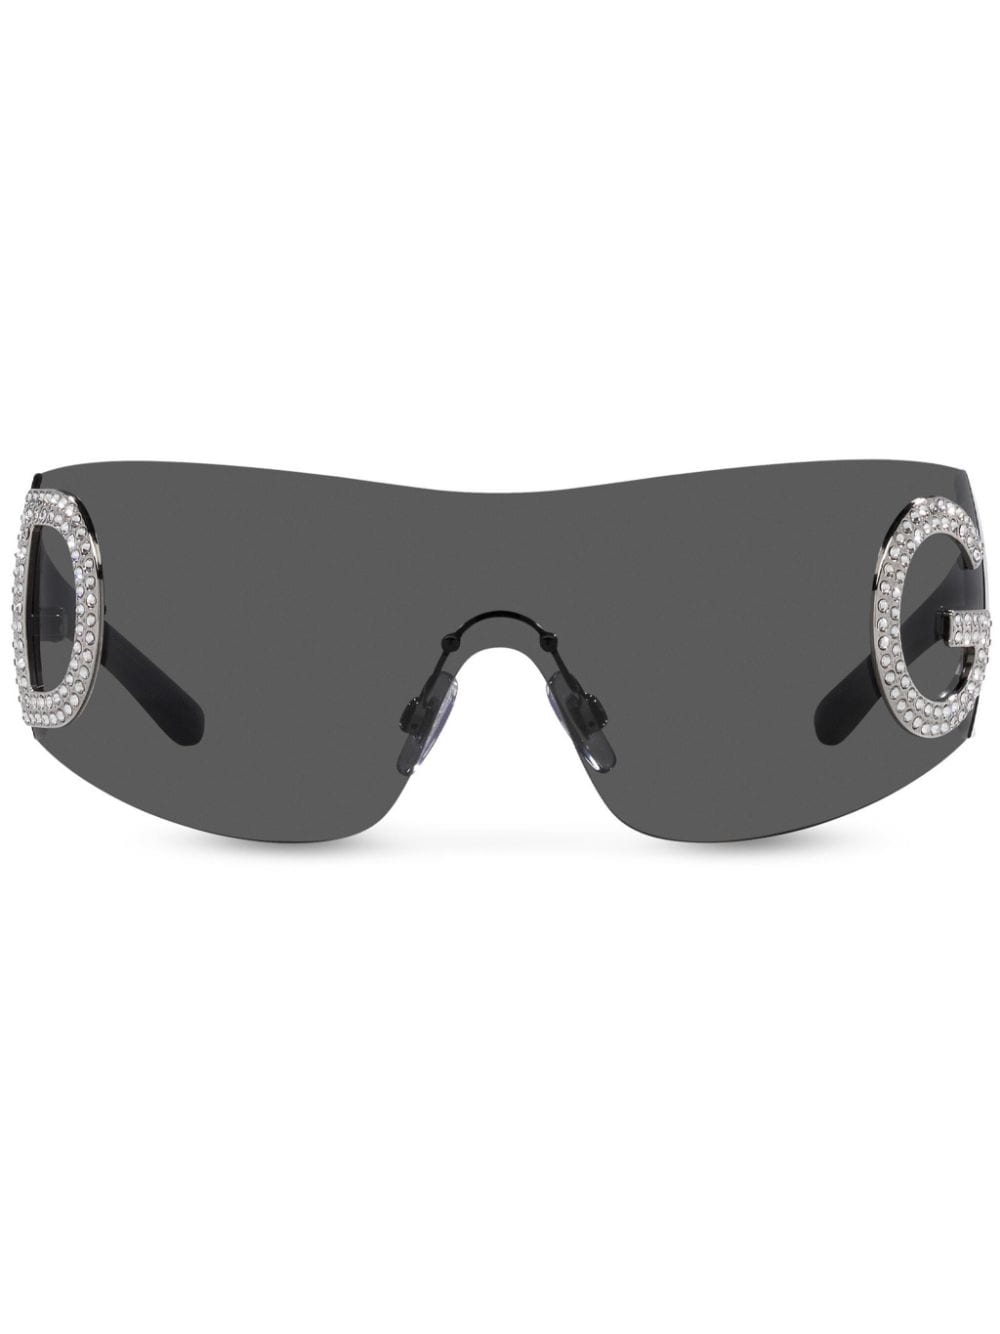 Dolce & Gabbana Eyewear Re-Edition shield-frame sunglasses - Black von Dolce & Gabbana Eyewear